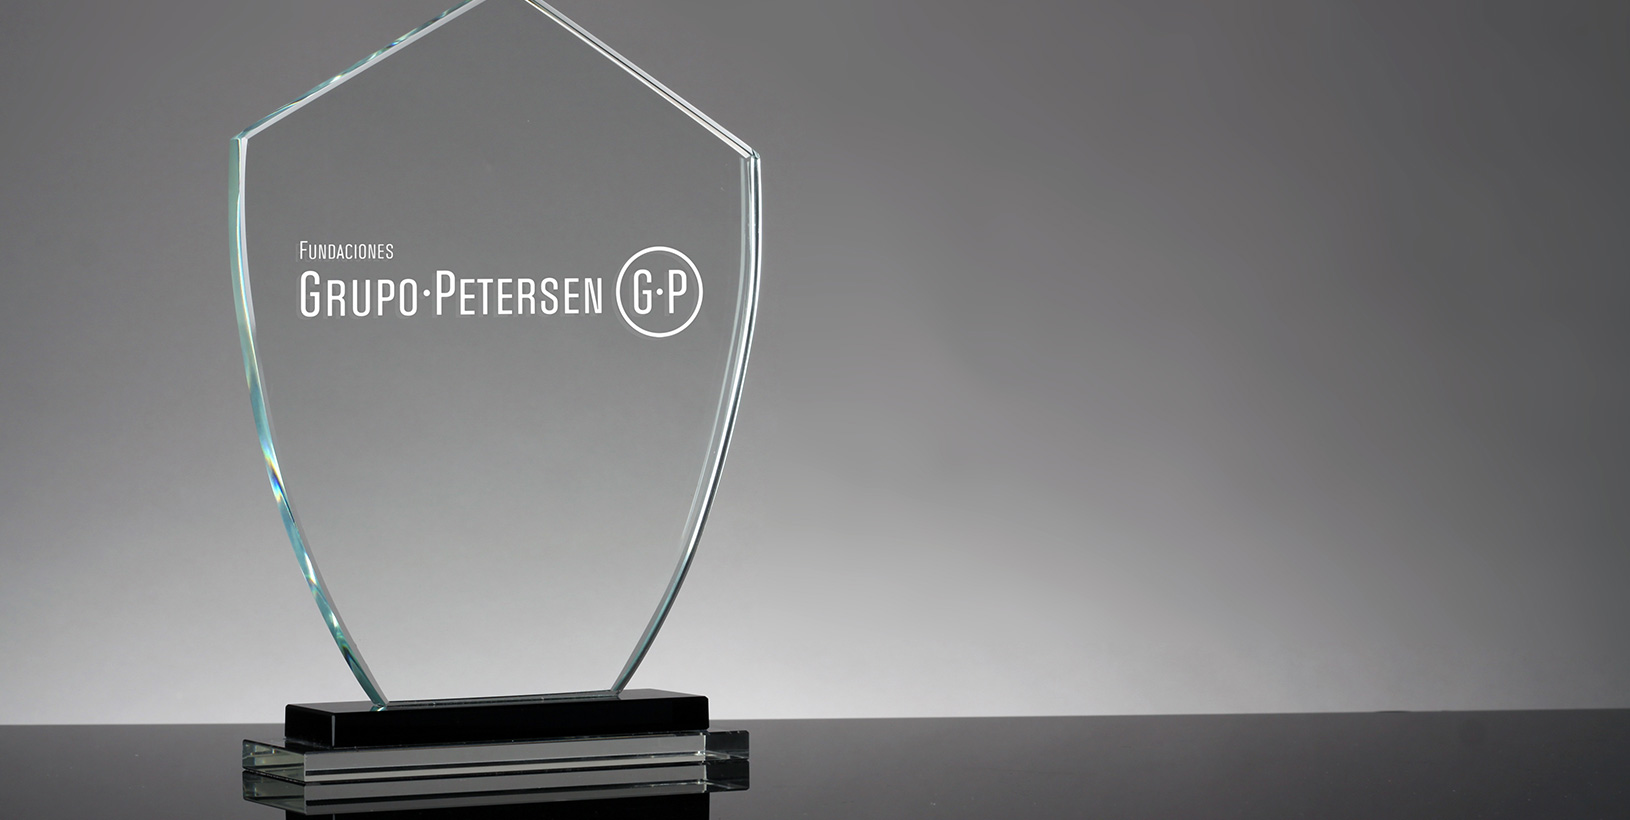 Imagen de Distinciones de Fundaciones Grupo Petersen - Se visualiza una especie de trofeo transparente